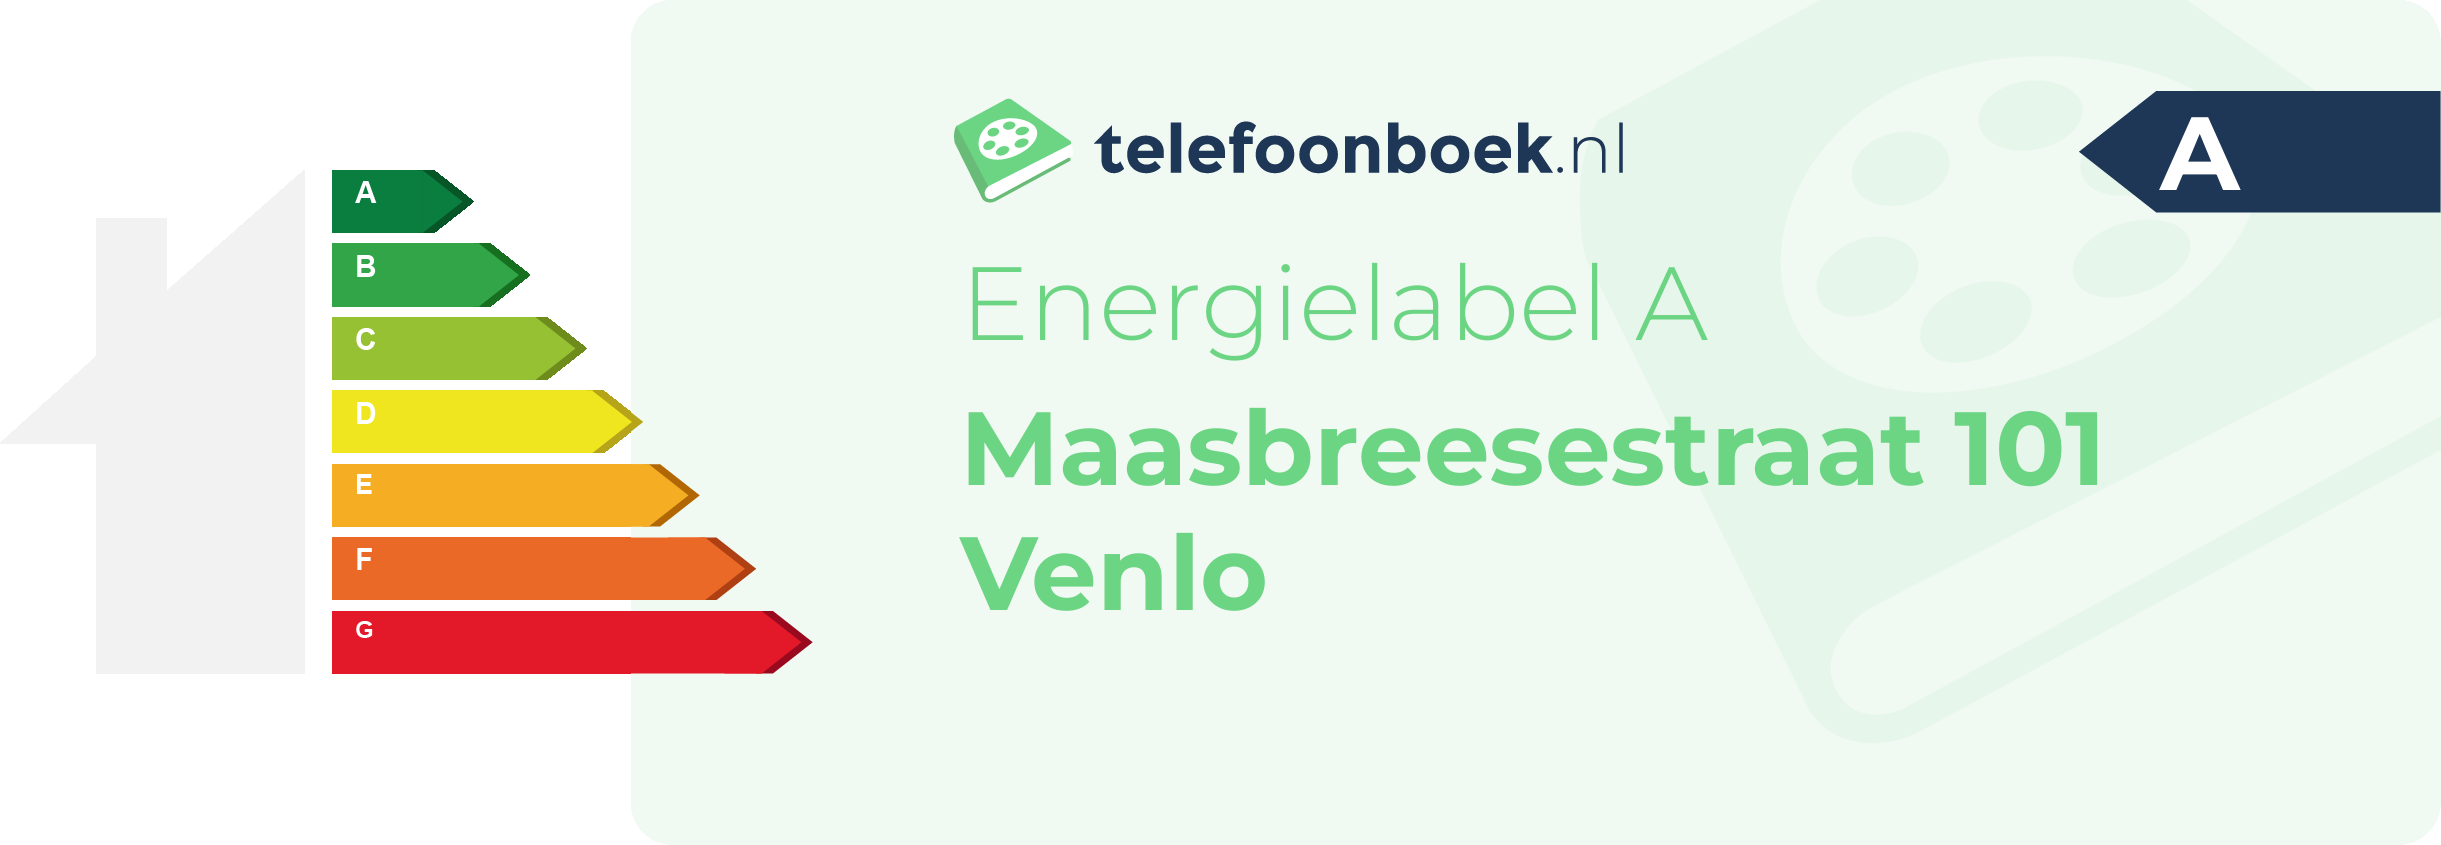 Energielabel Maasbreesestraat 101 Venlo